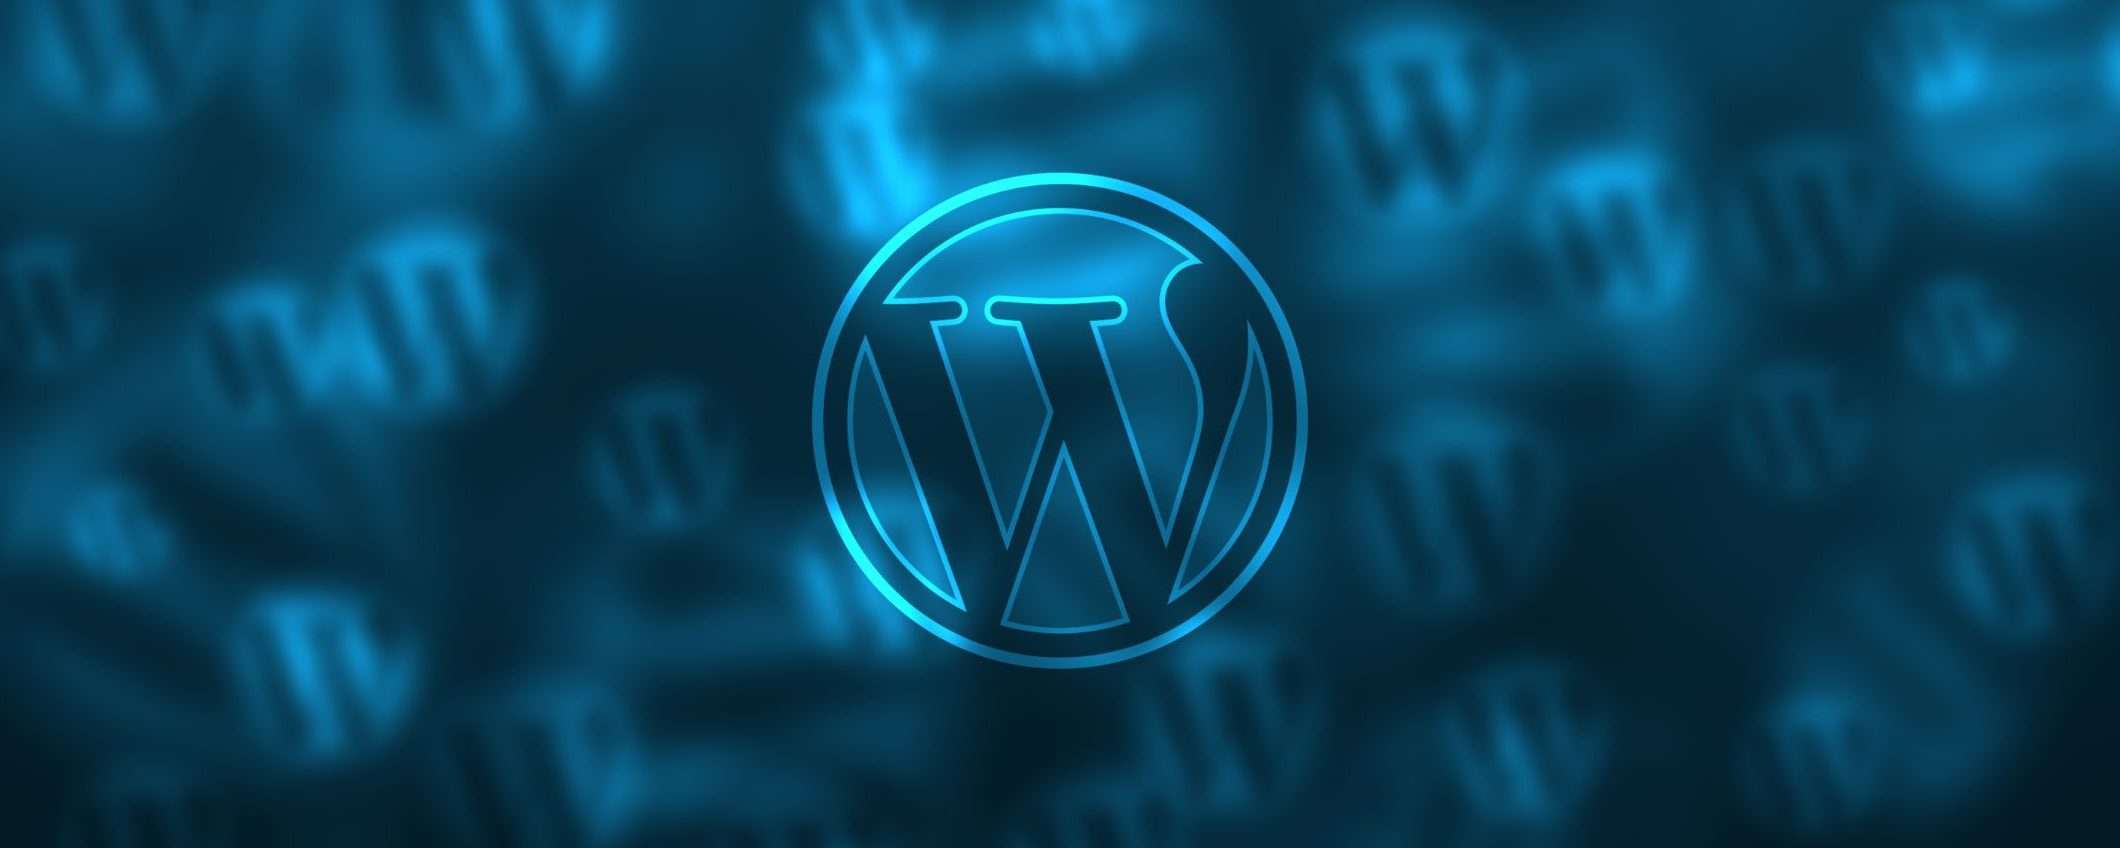 Il miglior hosting con WordPress preinstallato: l'offerta Serverplan